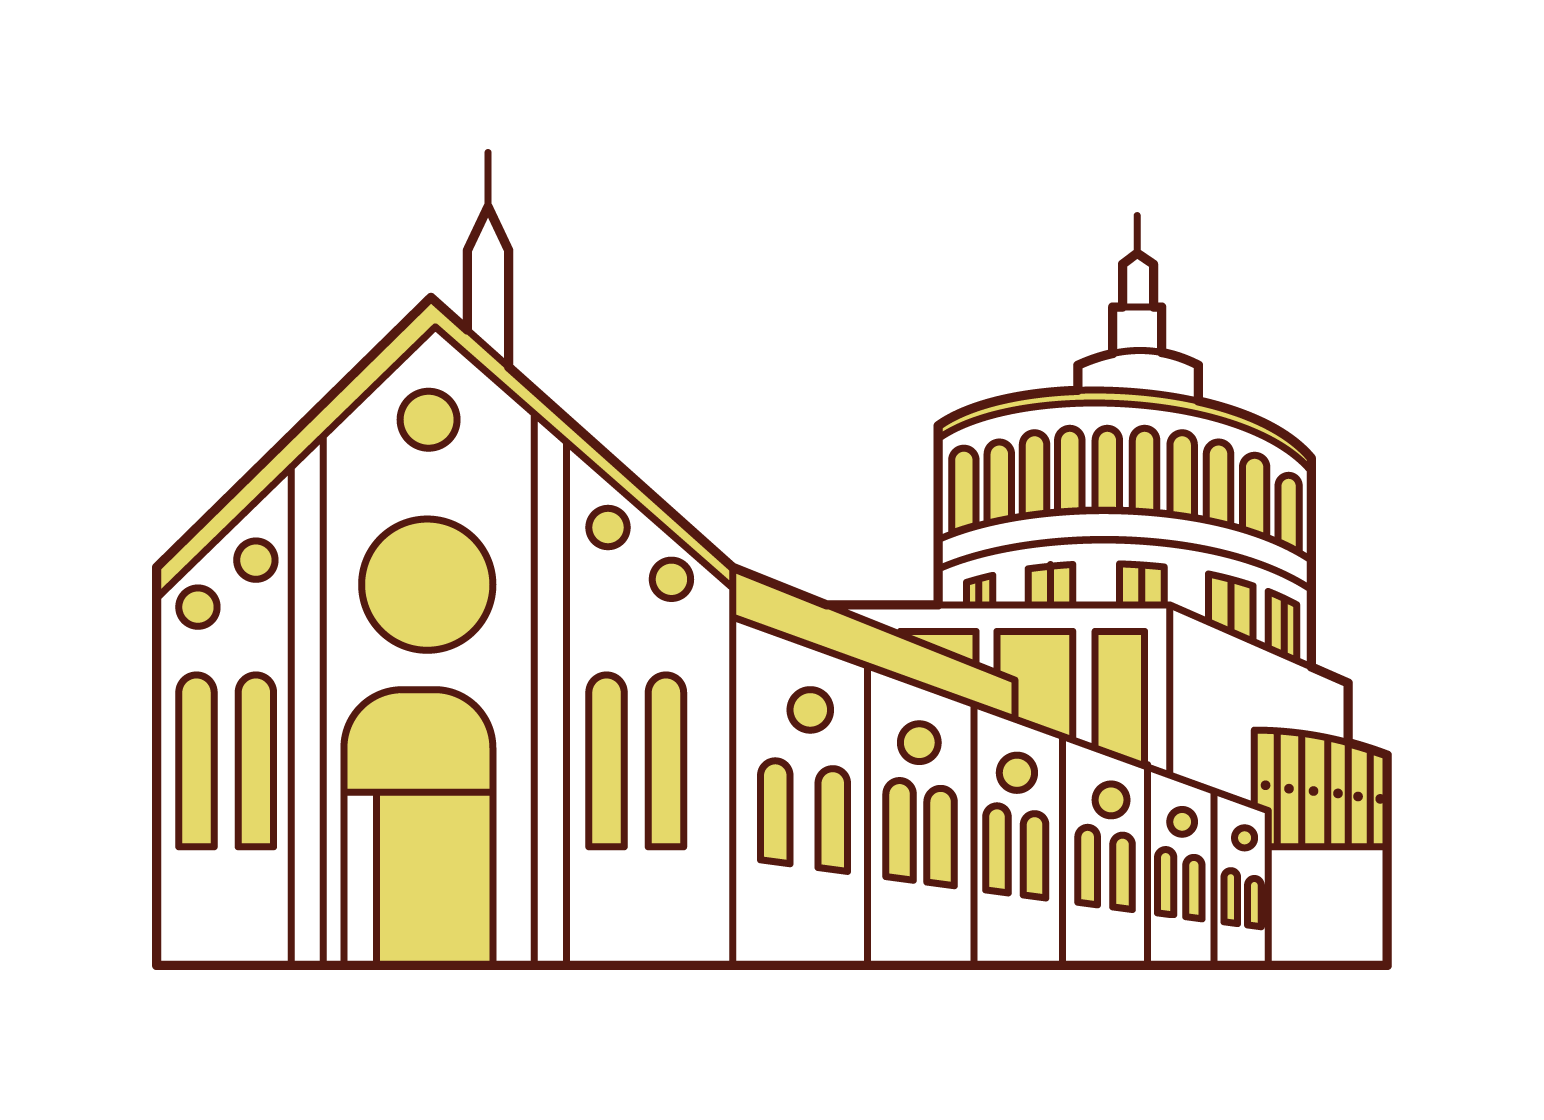 Illustration of the Church of Santa Maria delle Grazie